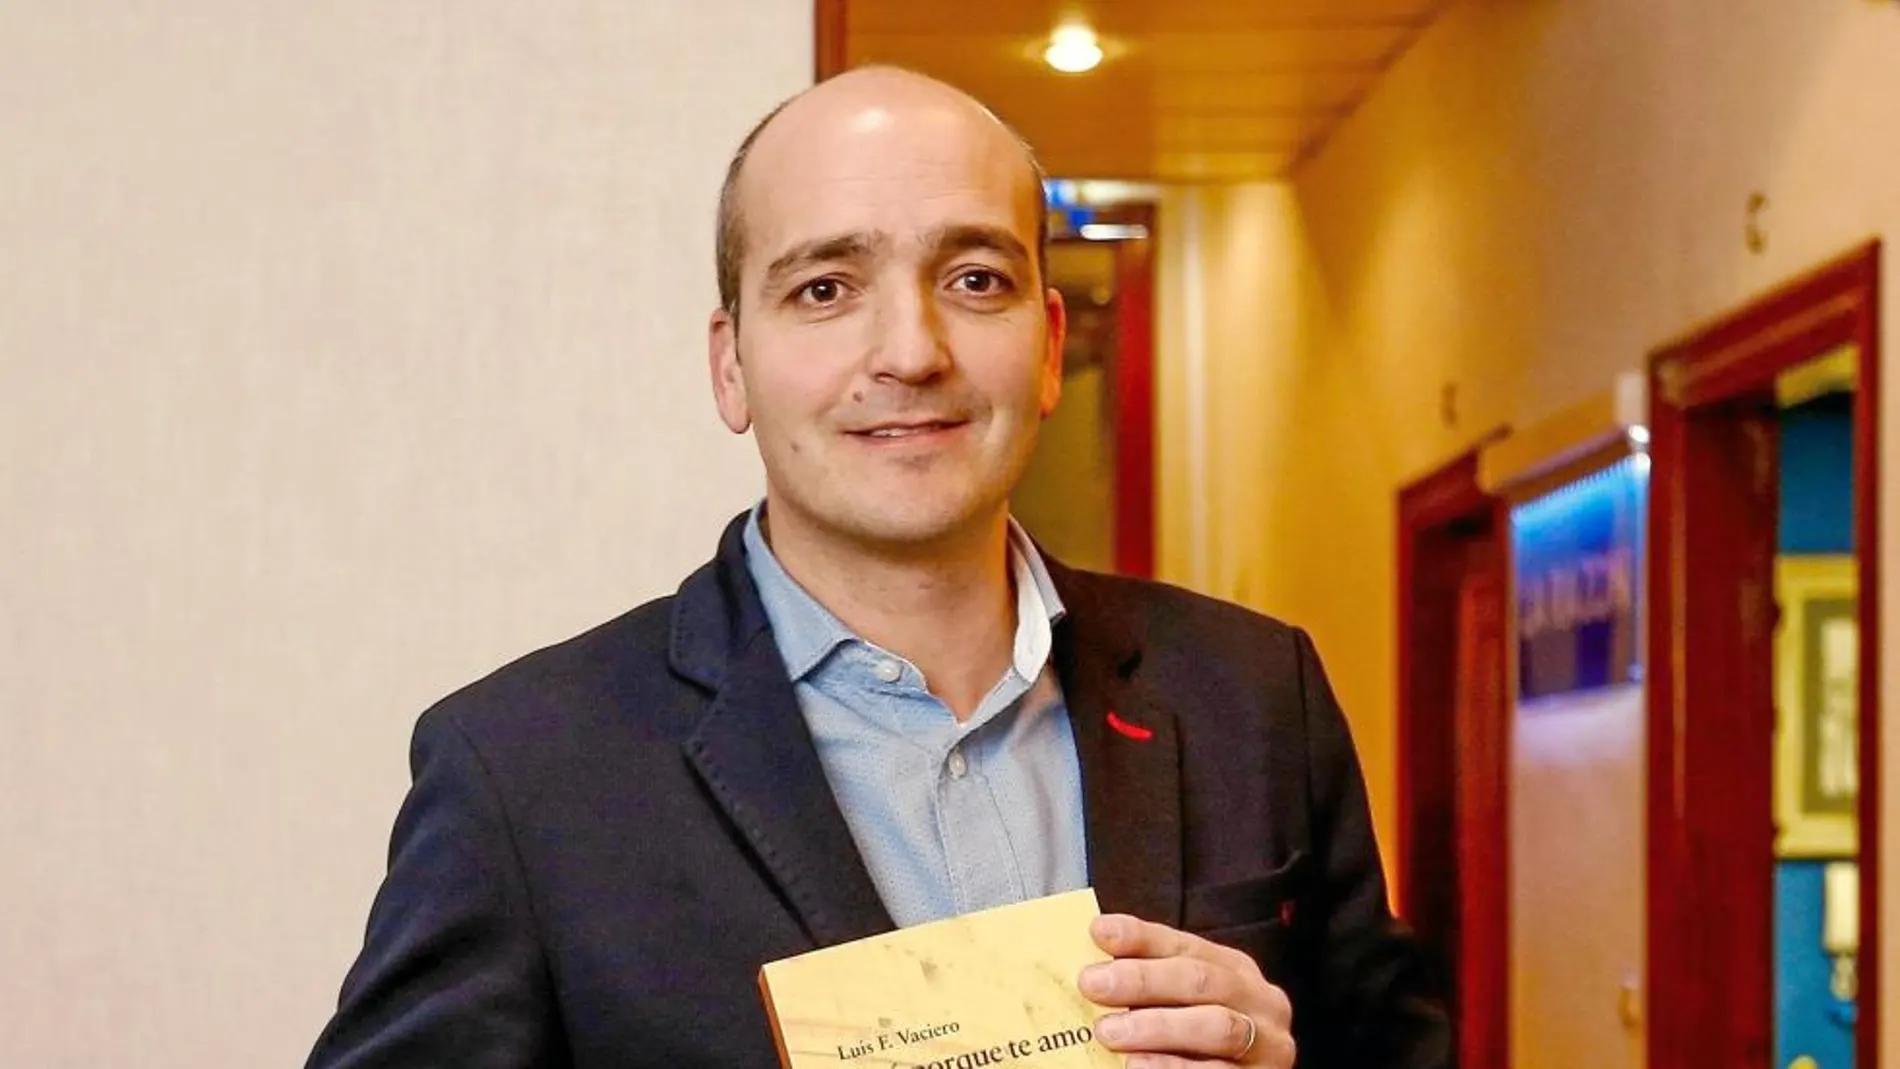 El escritor gijonés Luis Fernández Vaciero posa con su primer libro